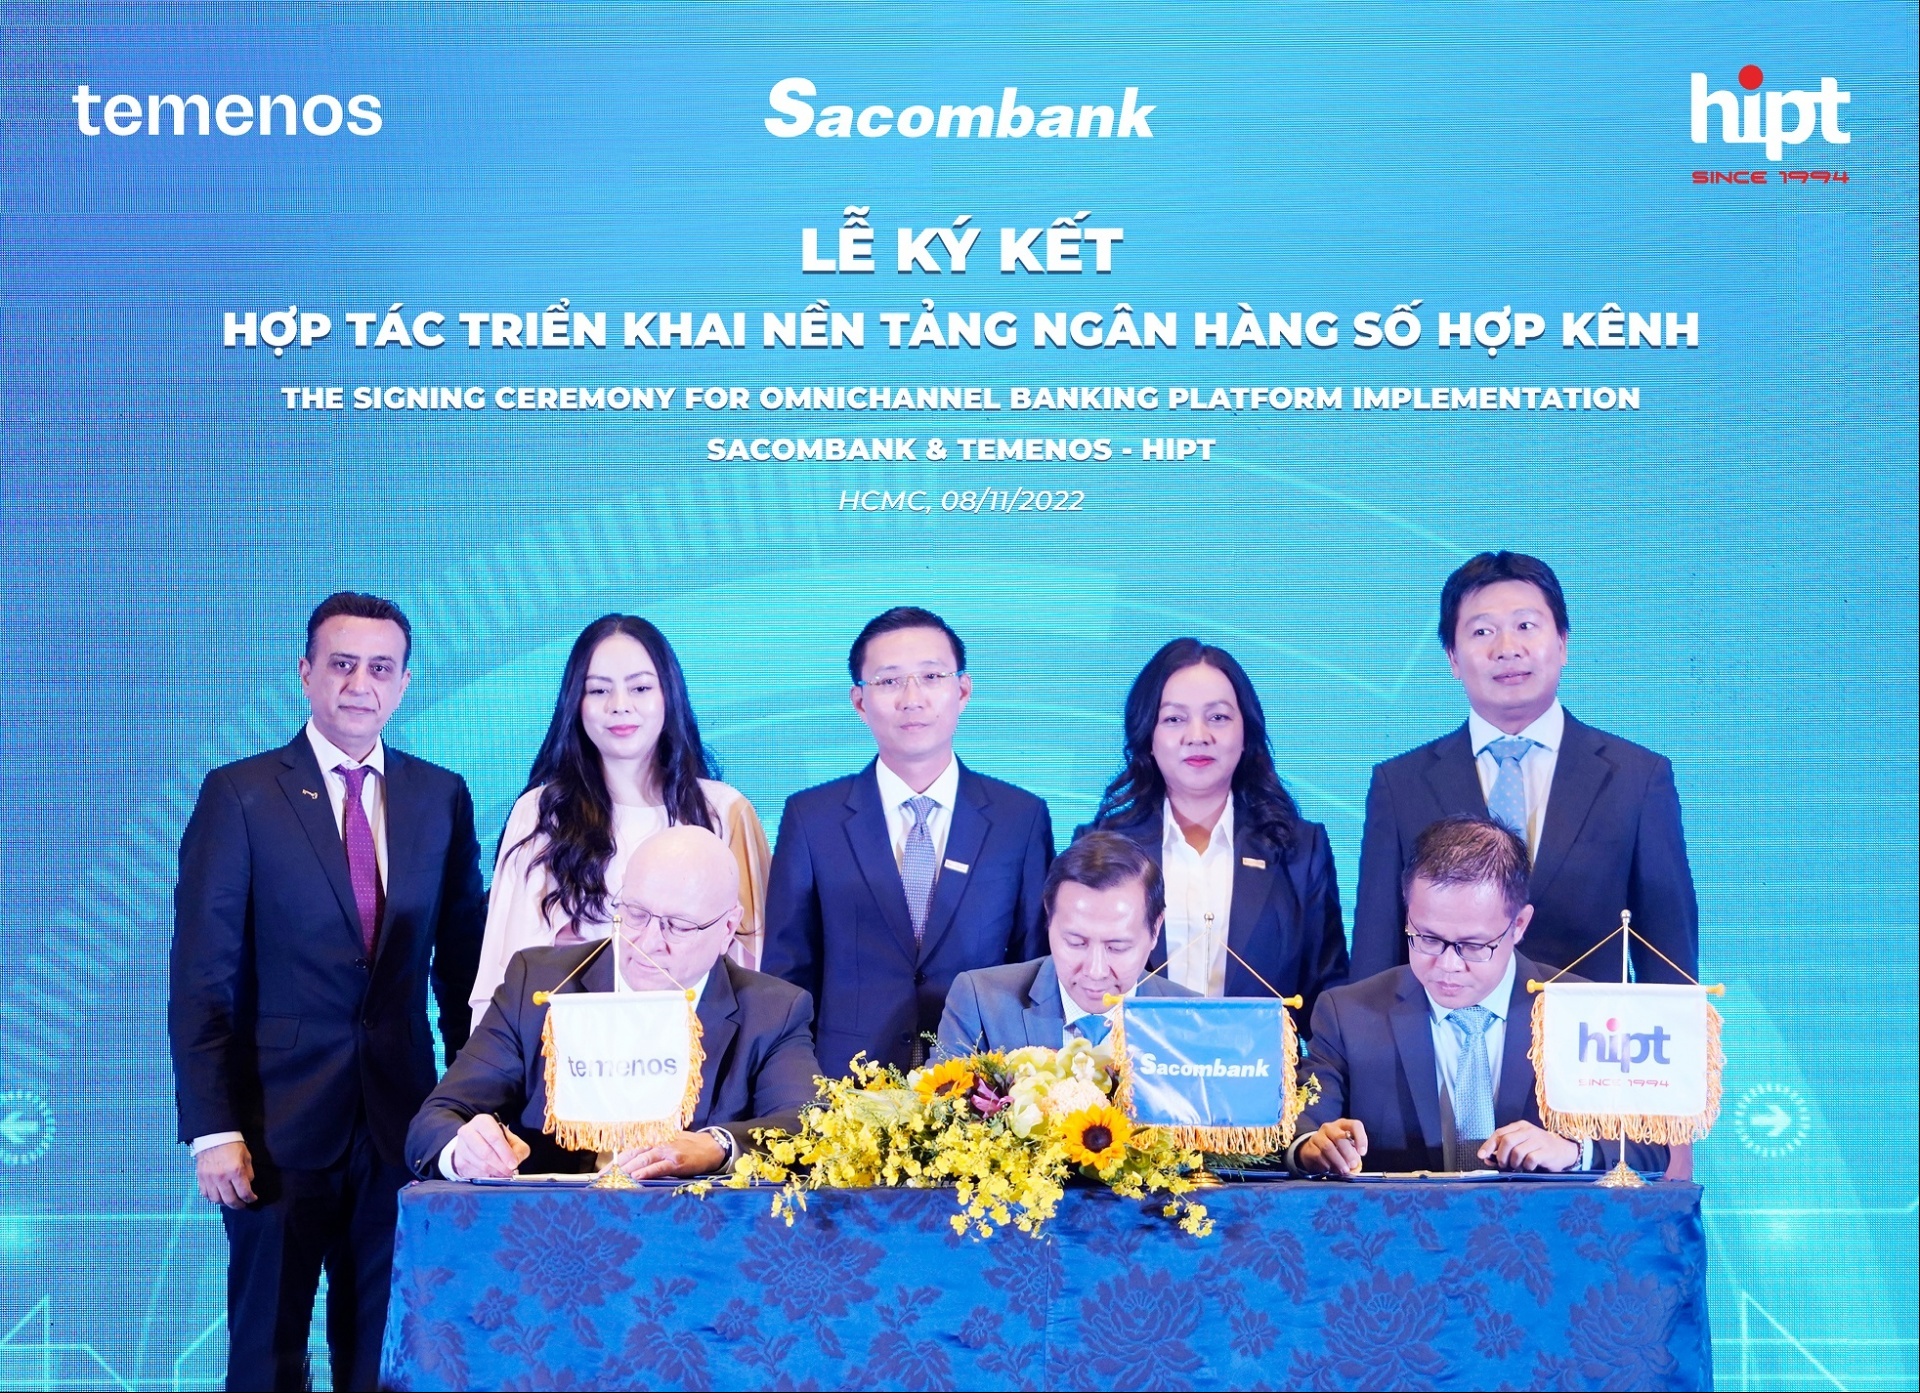 Sacombank hợp tác triển khai nền tảng ngân hàng hợp kênh với liên danh Temenos – HiPT